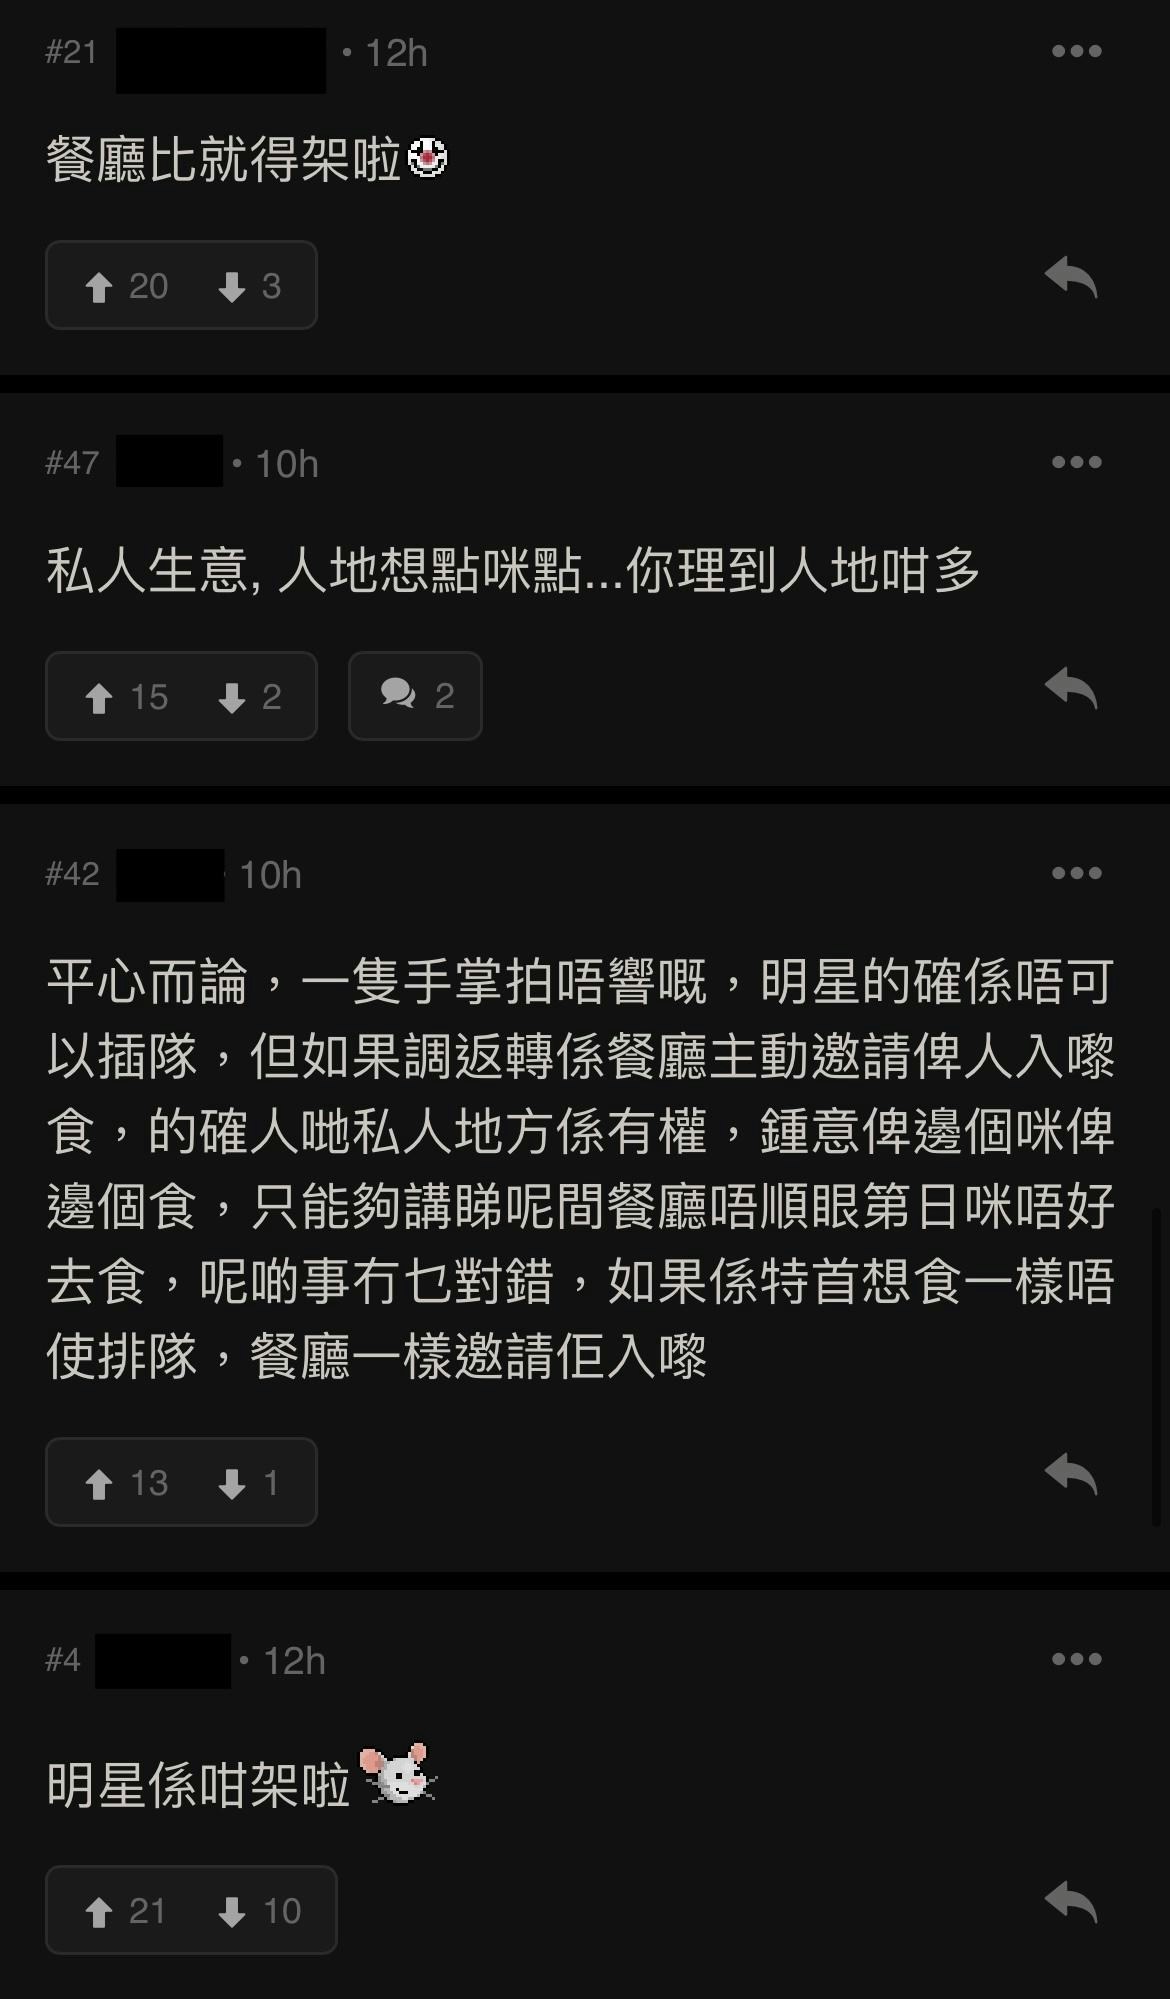 事件被放上讨论区后，大部分香港网民都见惯不怪。（连登讨论区）